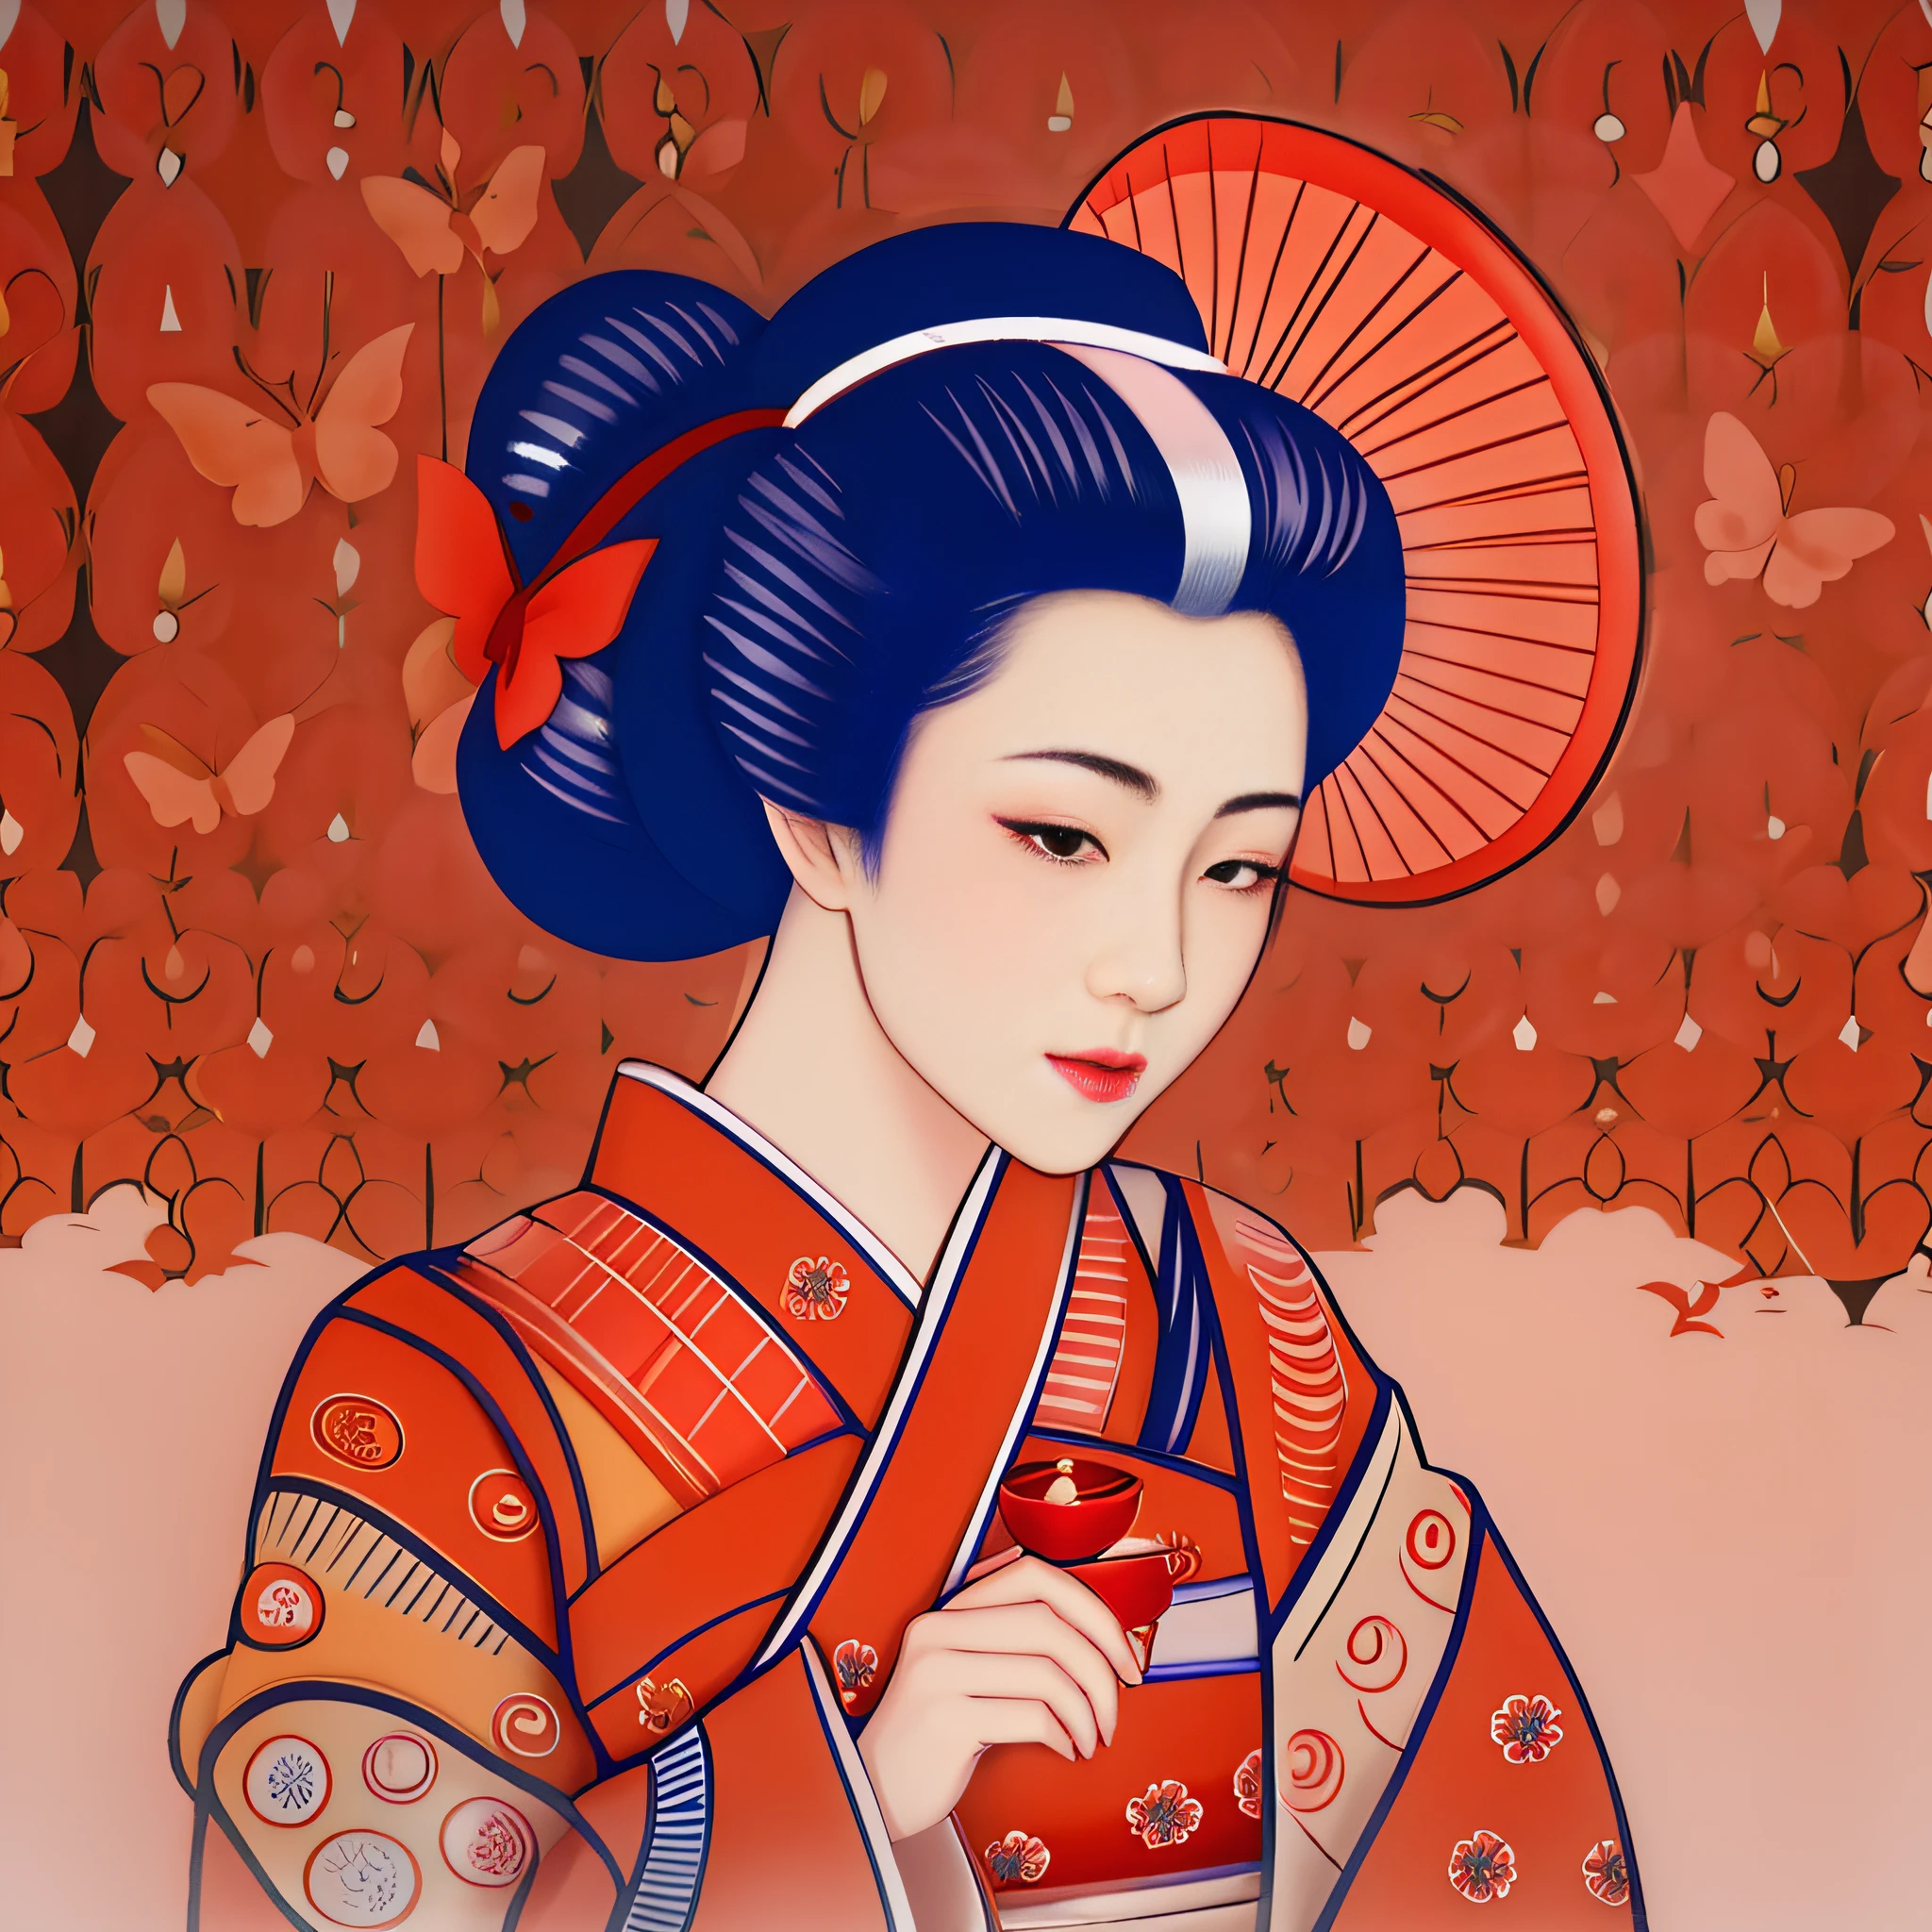 Hay una mujer con un kimono y un paraguas rojo., estilo de arte japonés, geisha japonesa, Retrato de uma geisha bonita, geisha de belleza, Retrato da geisha, inspirado en Uemura Shōen, niña geisha, No estilo de arte de Ukiyo - E, Retrato de uma geisha, Arte japonesa, mujer japonesa elegante, geisha.